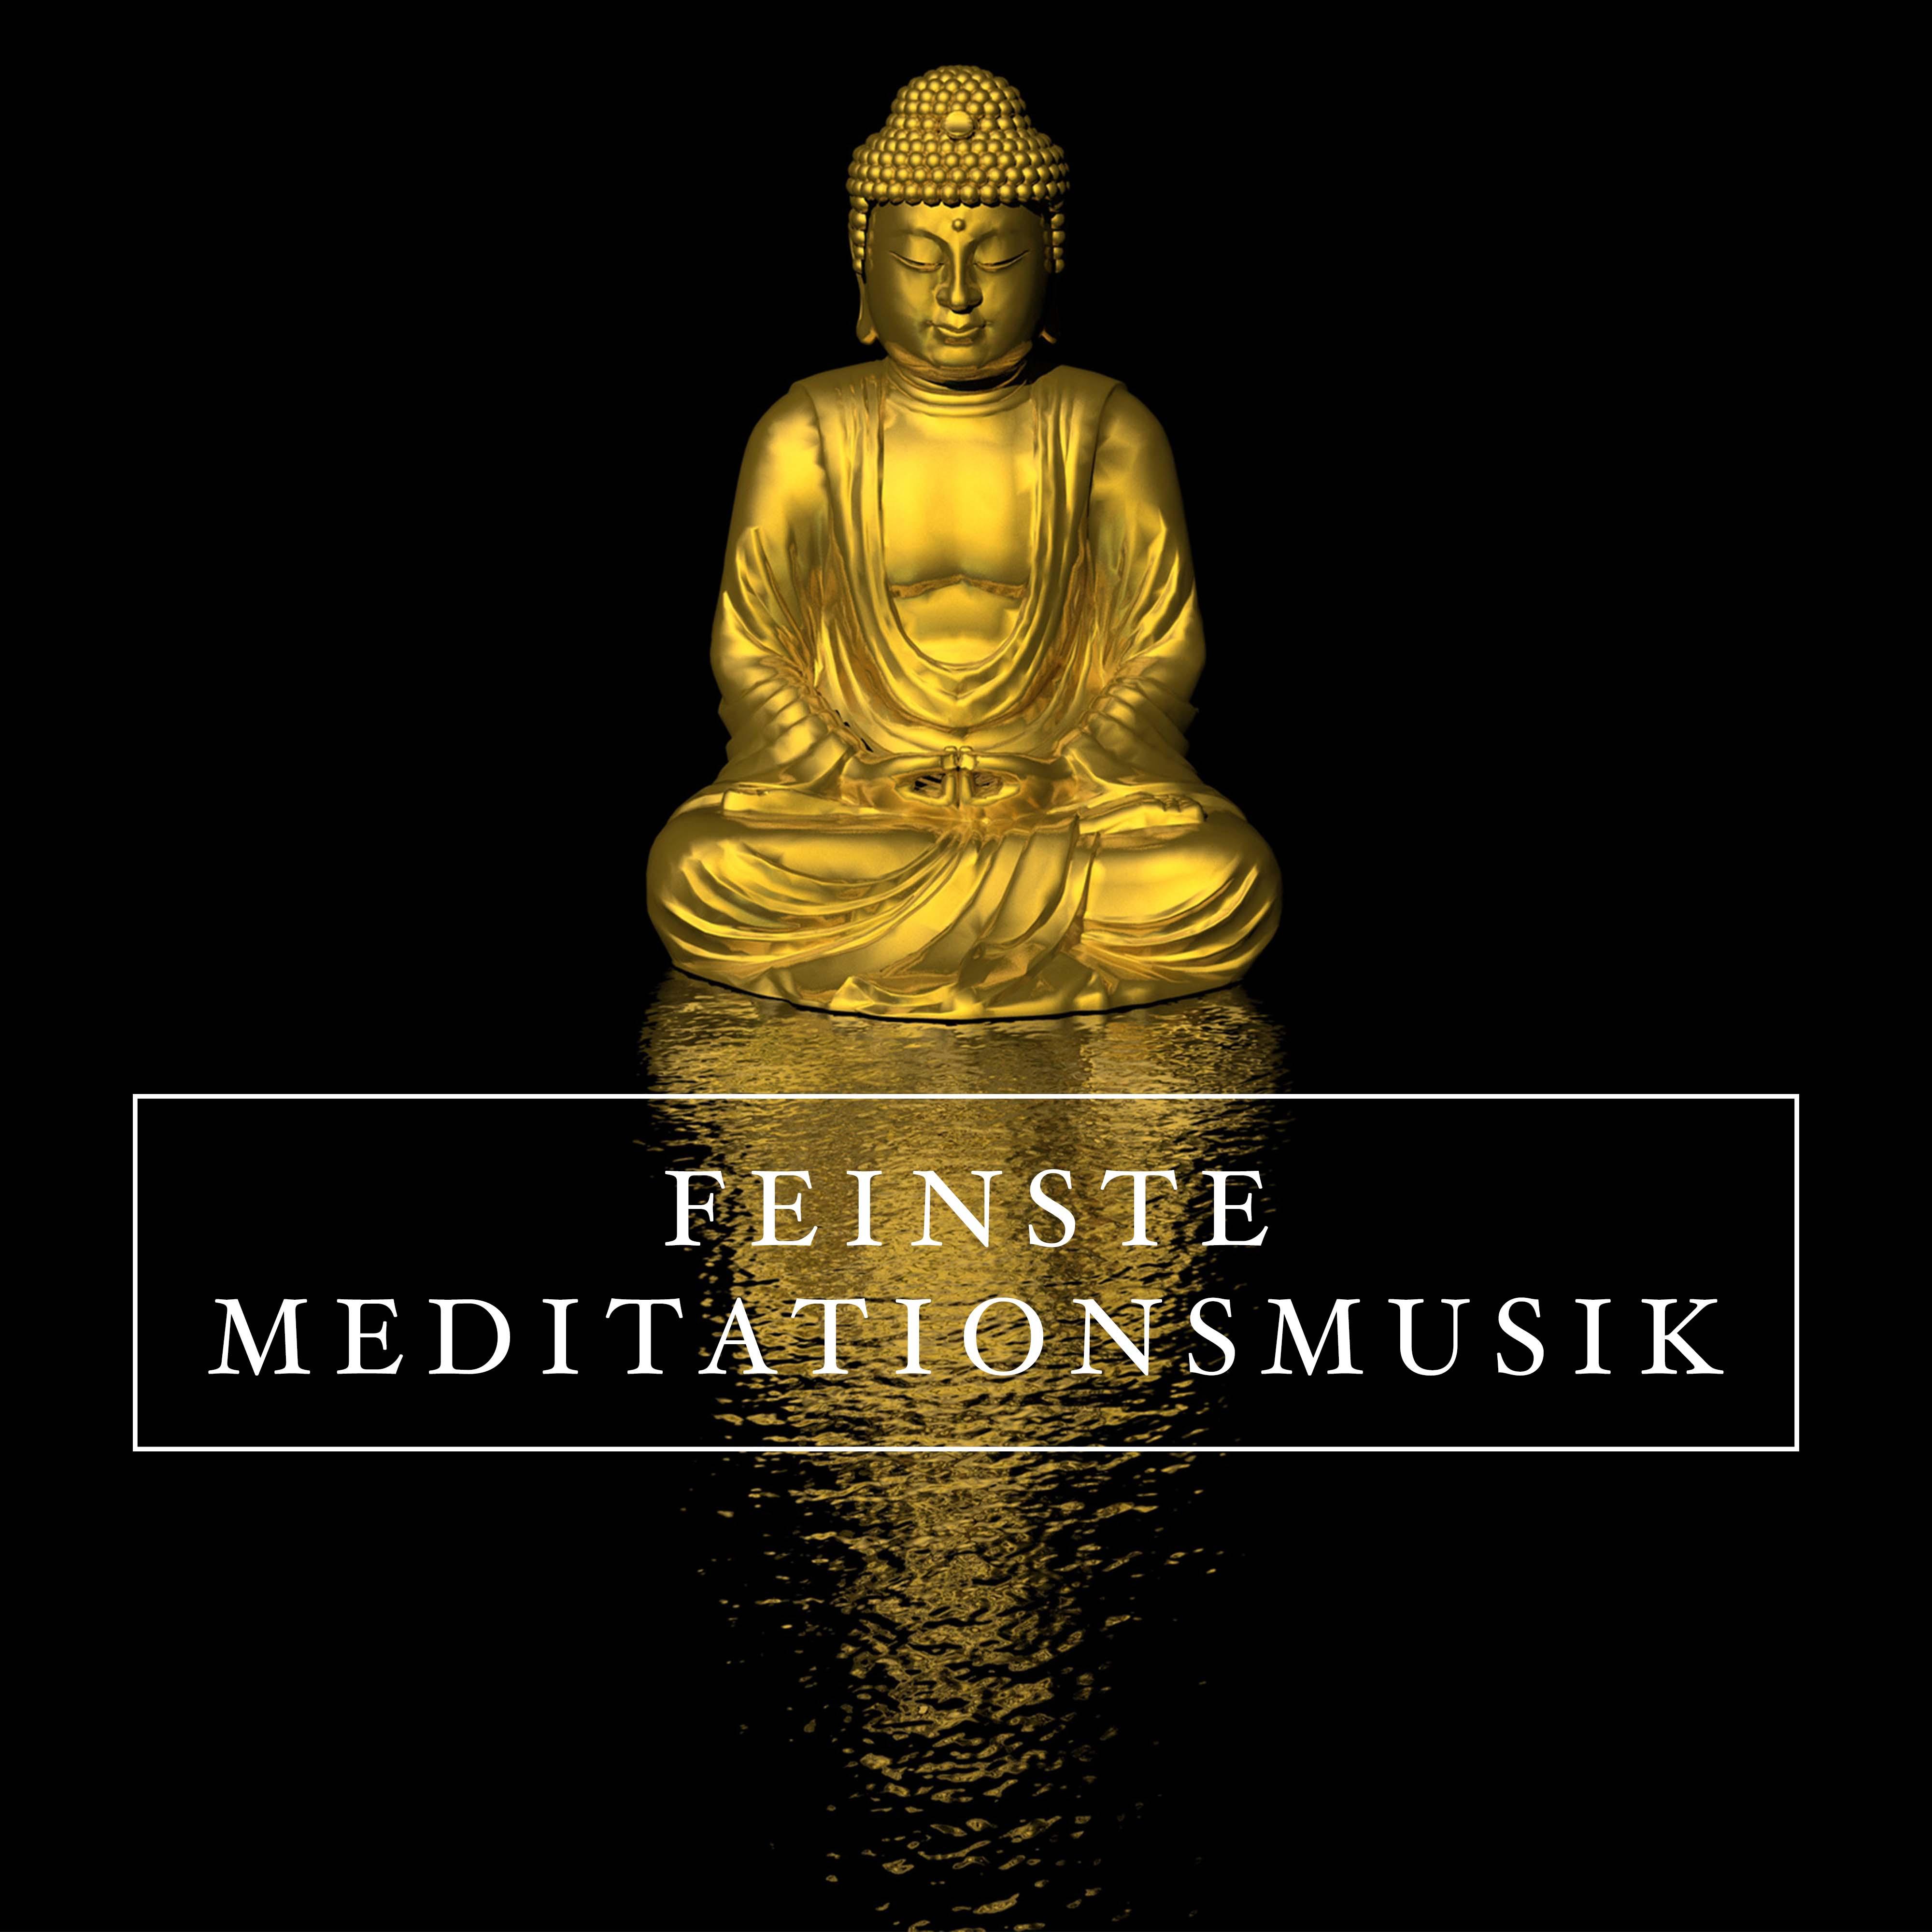 Feinste Meditationsmusik: Die richtige Entspannungsmusik für Meditation & Achtsamkeitsübungen